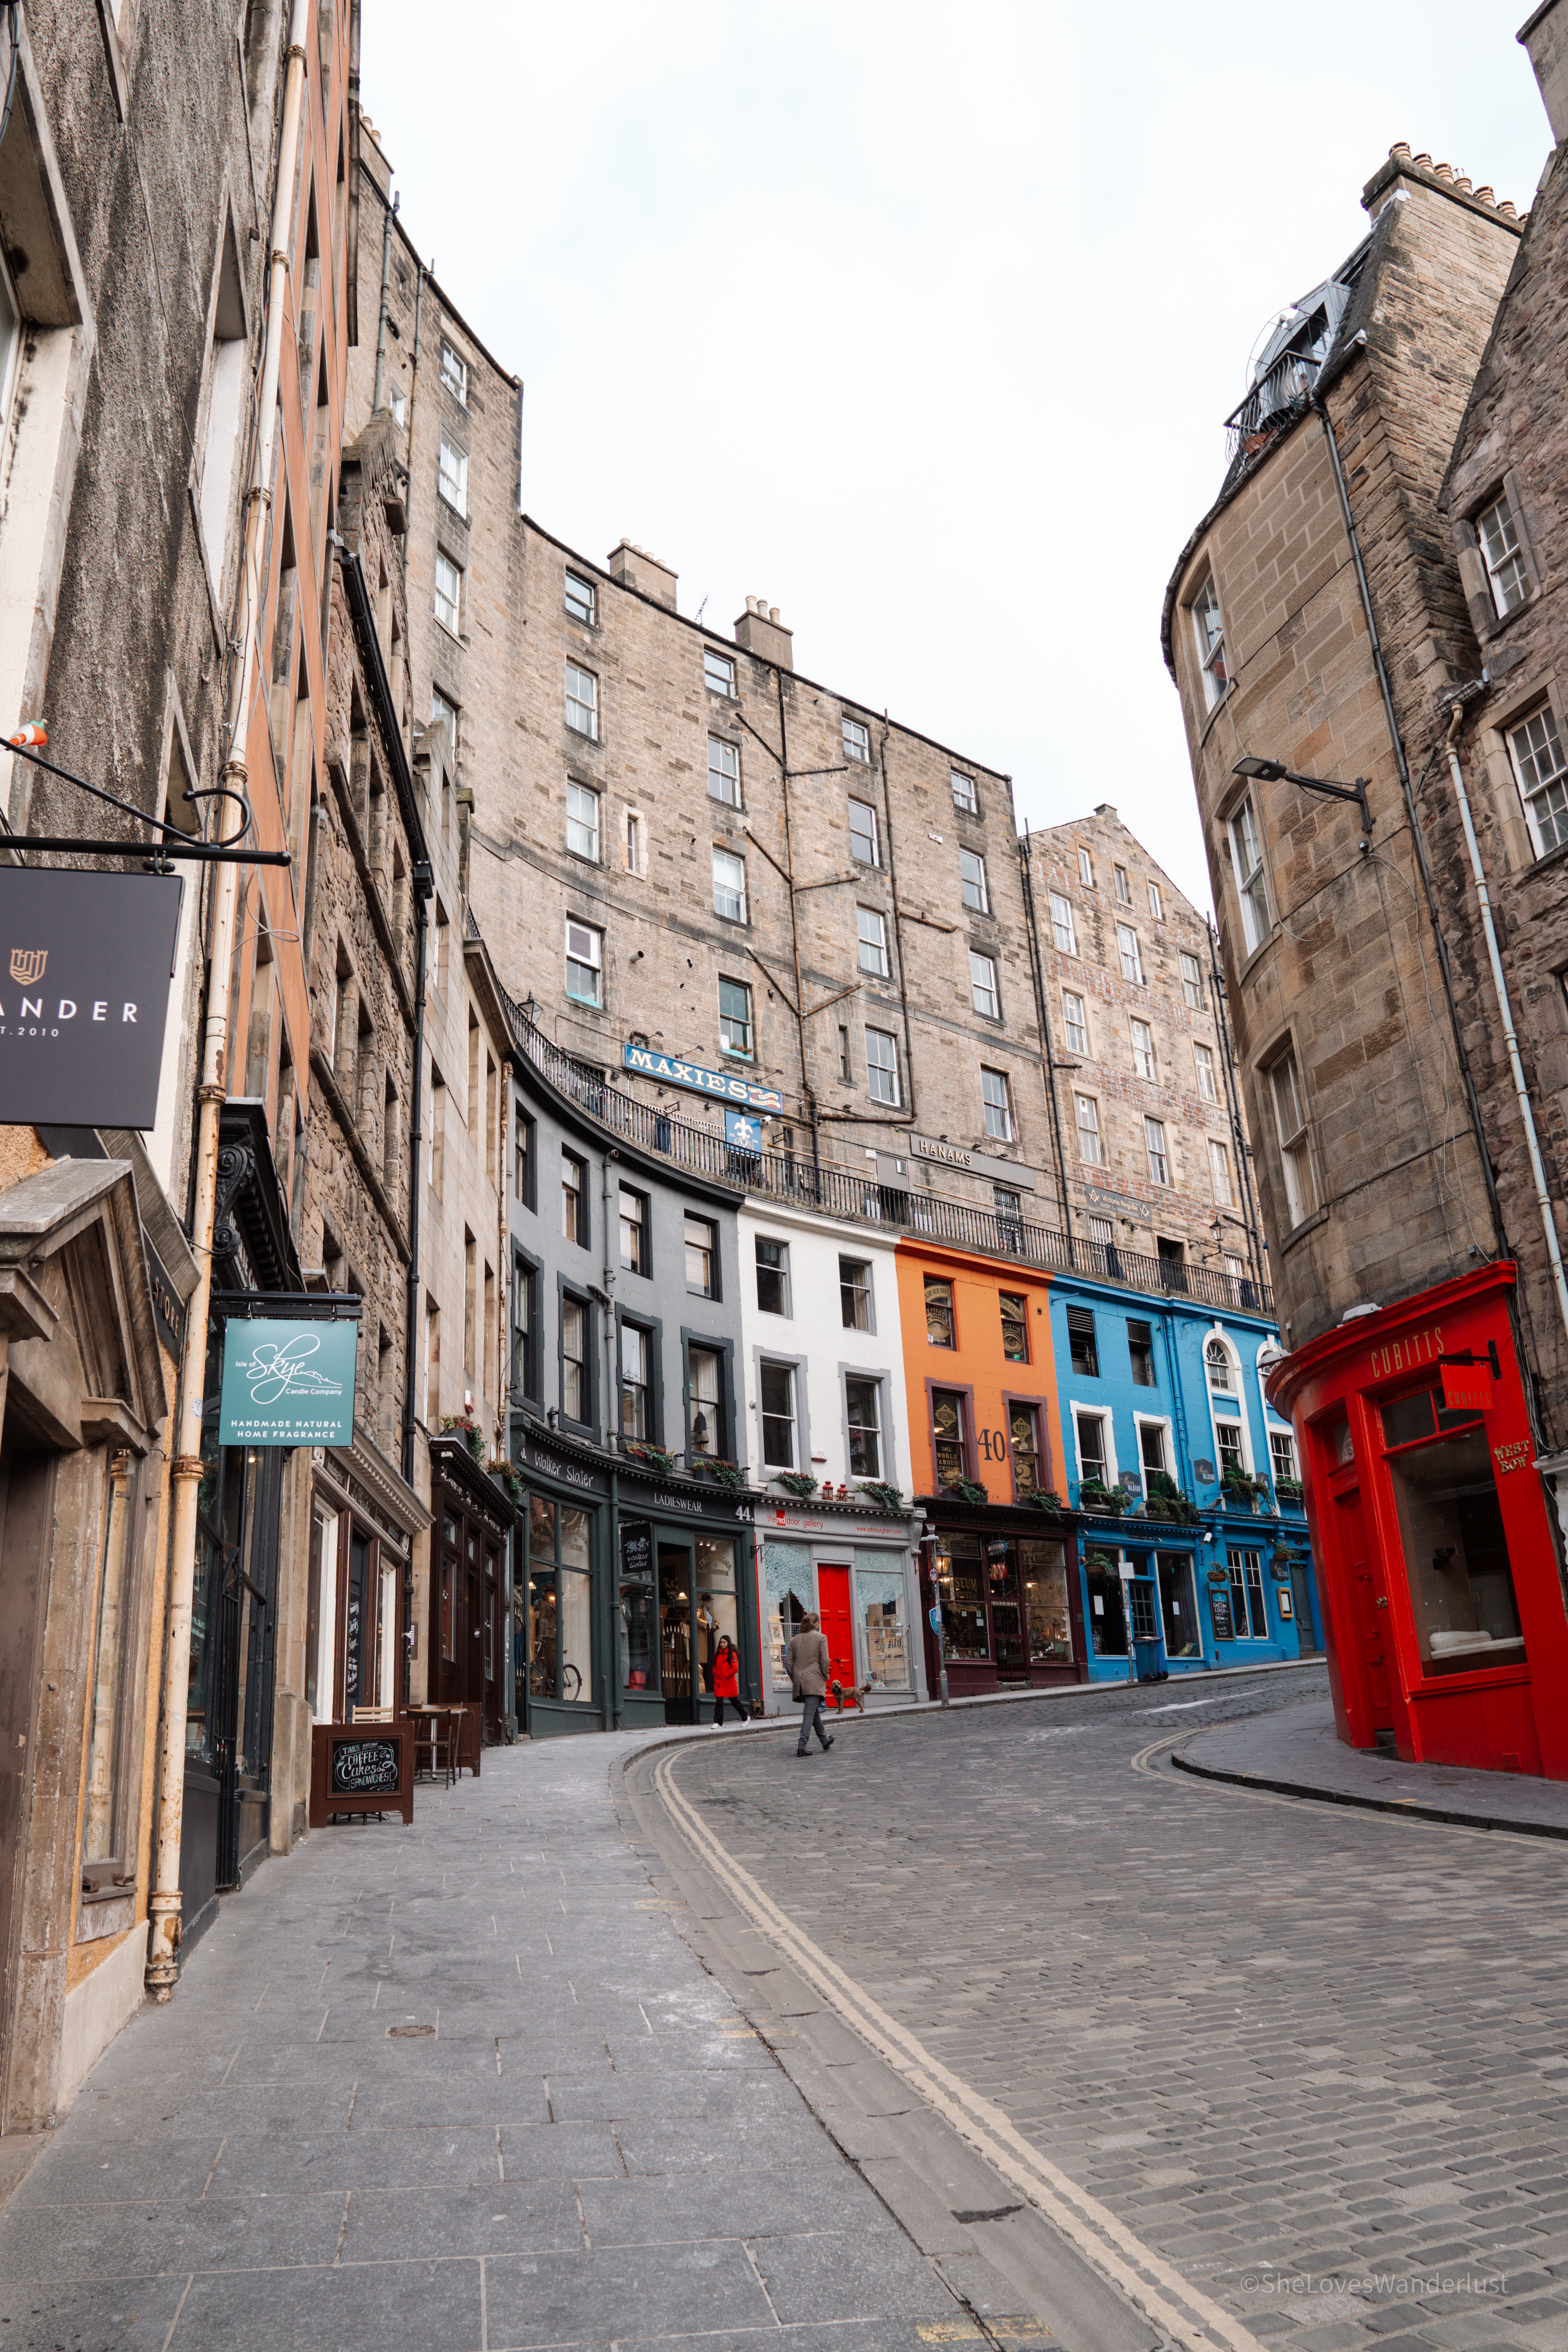 3 Days in Edinburgh - Victoria Street